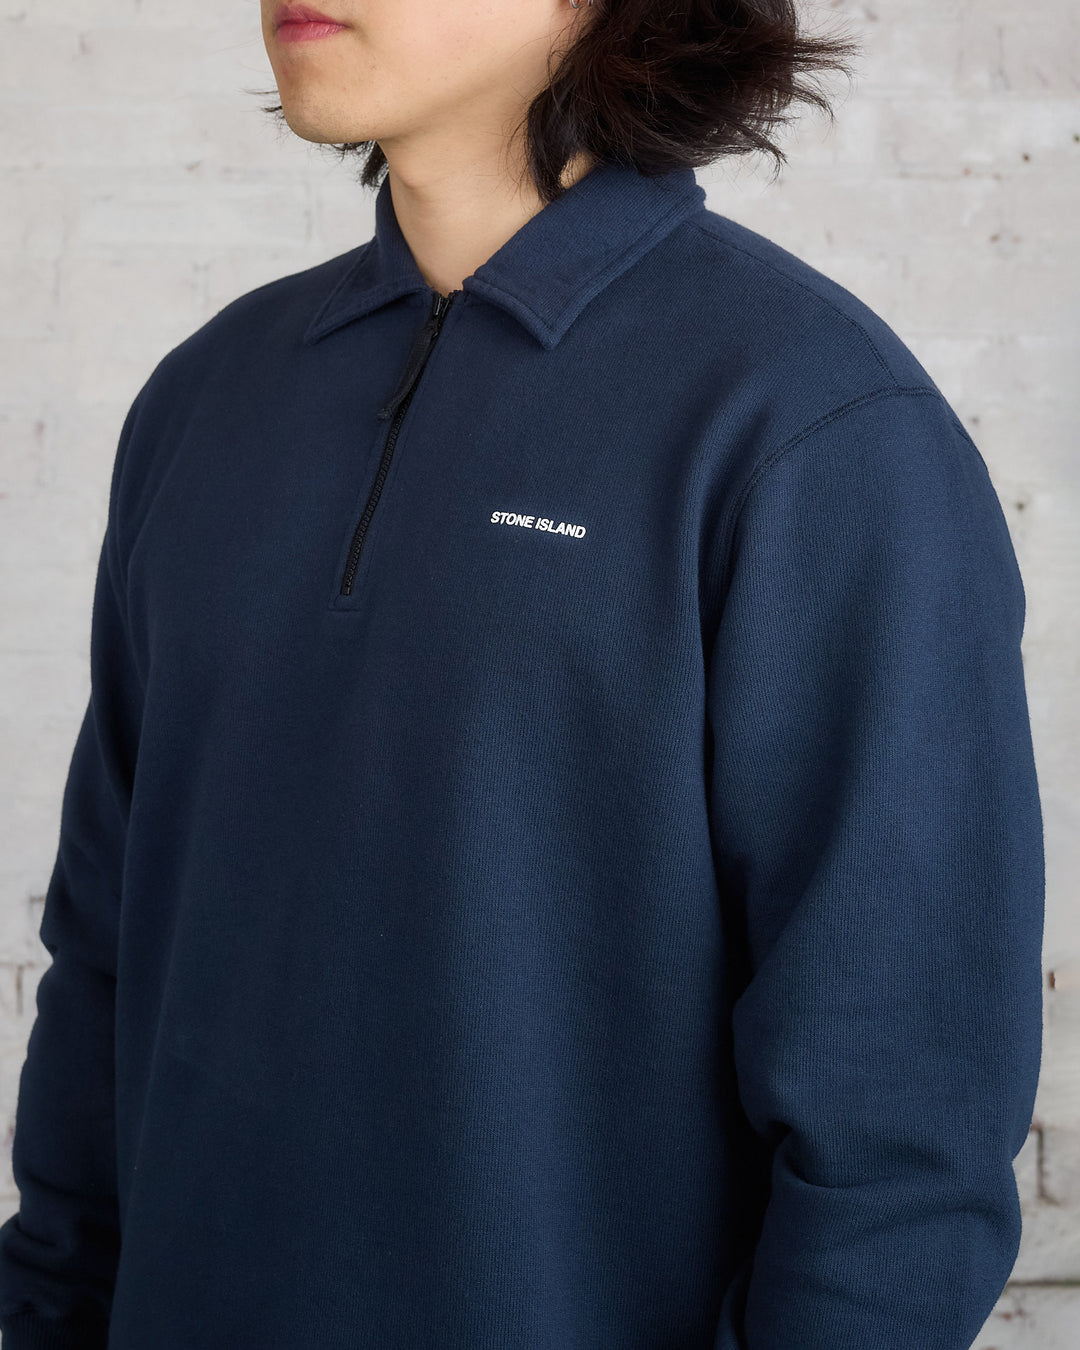 Stone Island Collar 1/4 Zip Wordmark Sweatshirt Navy Blue